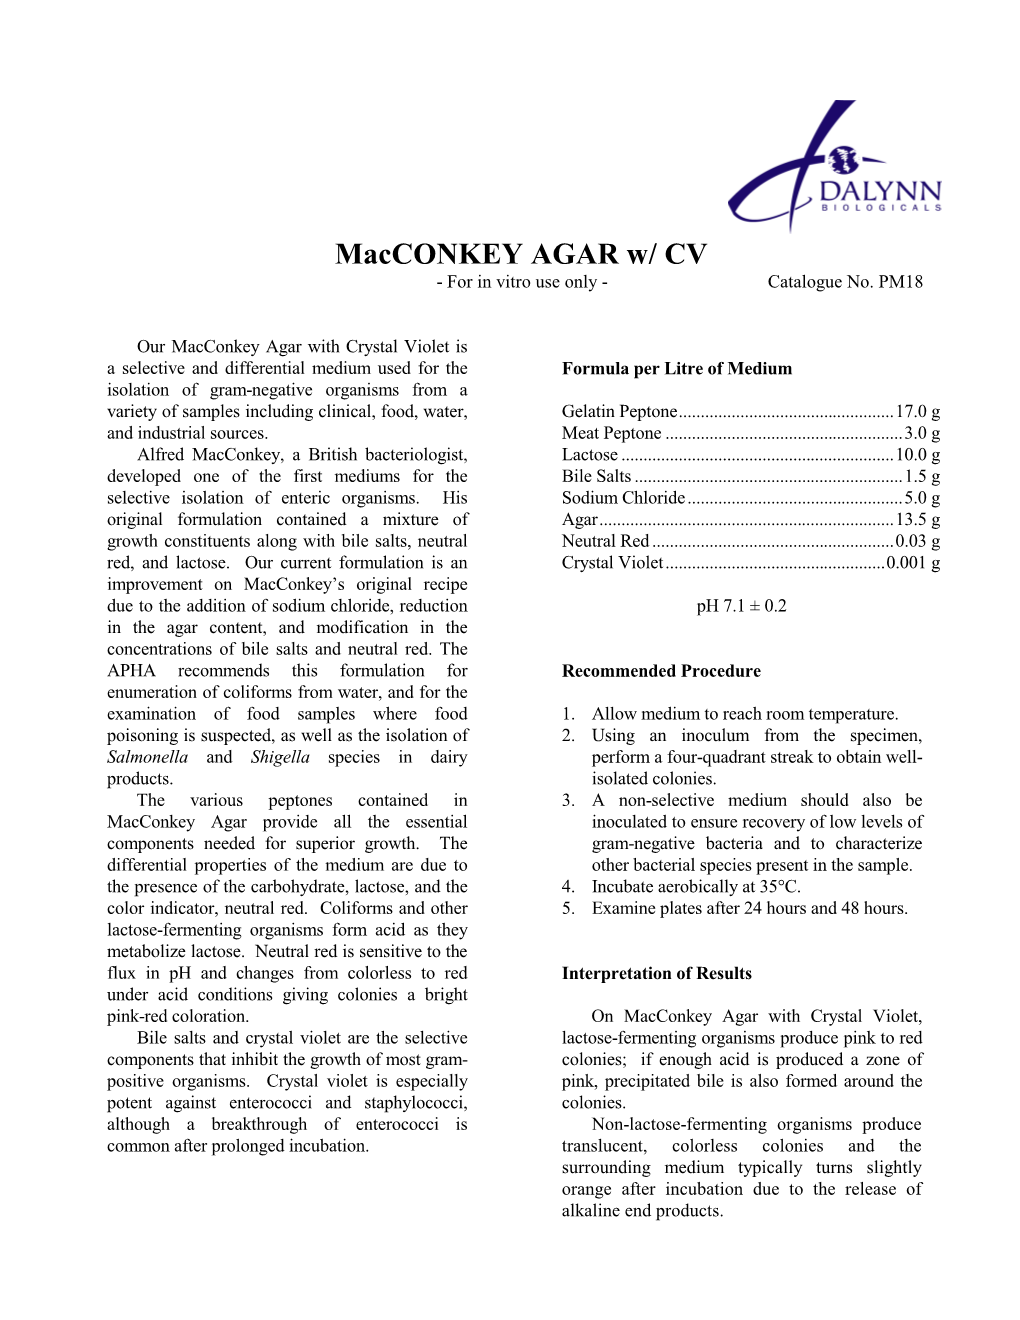 Macconkey AGAR W/ CV - for in Vitro Use Only - Catalogue No